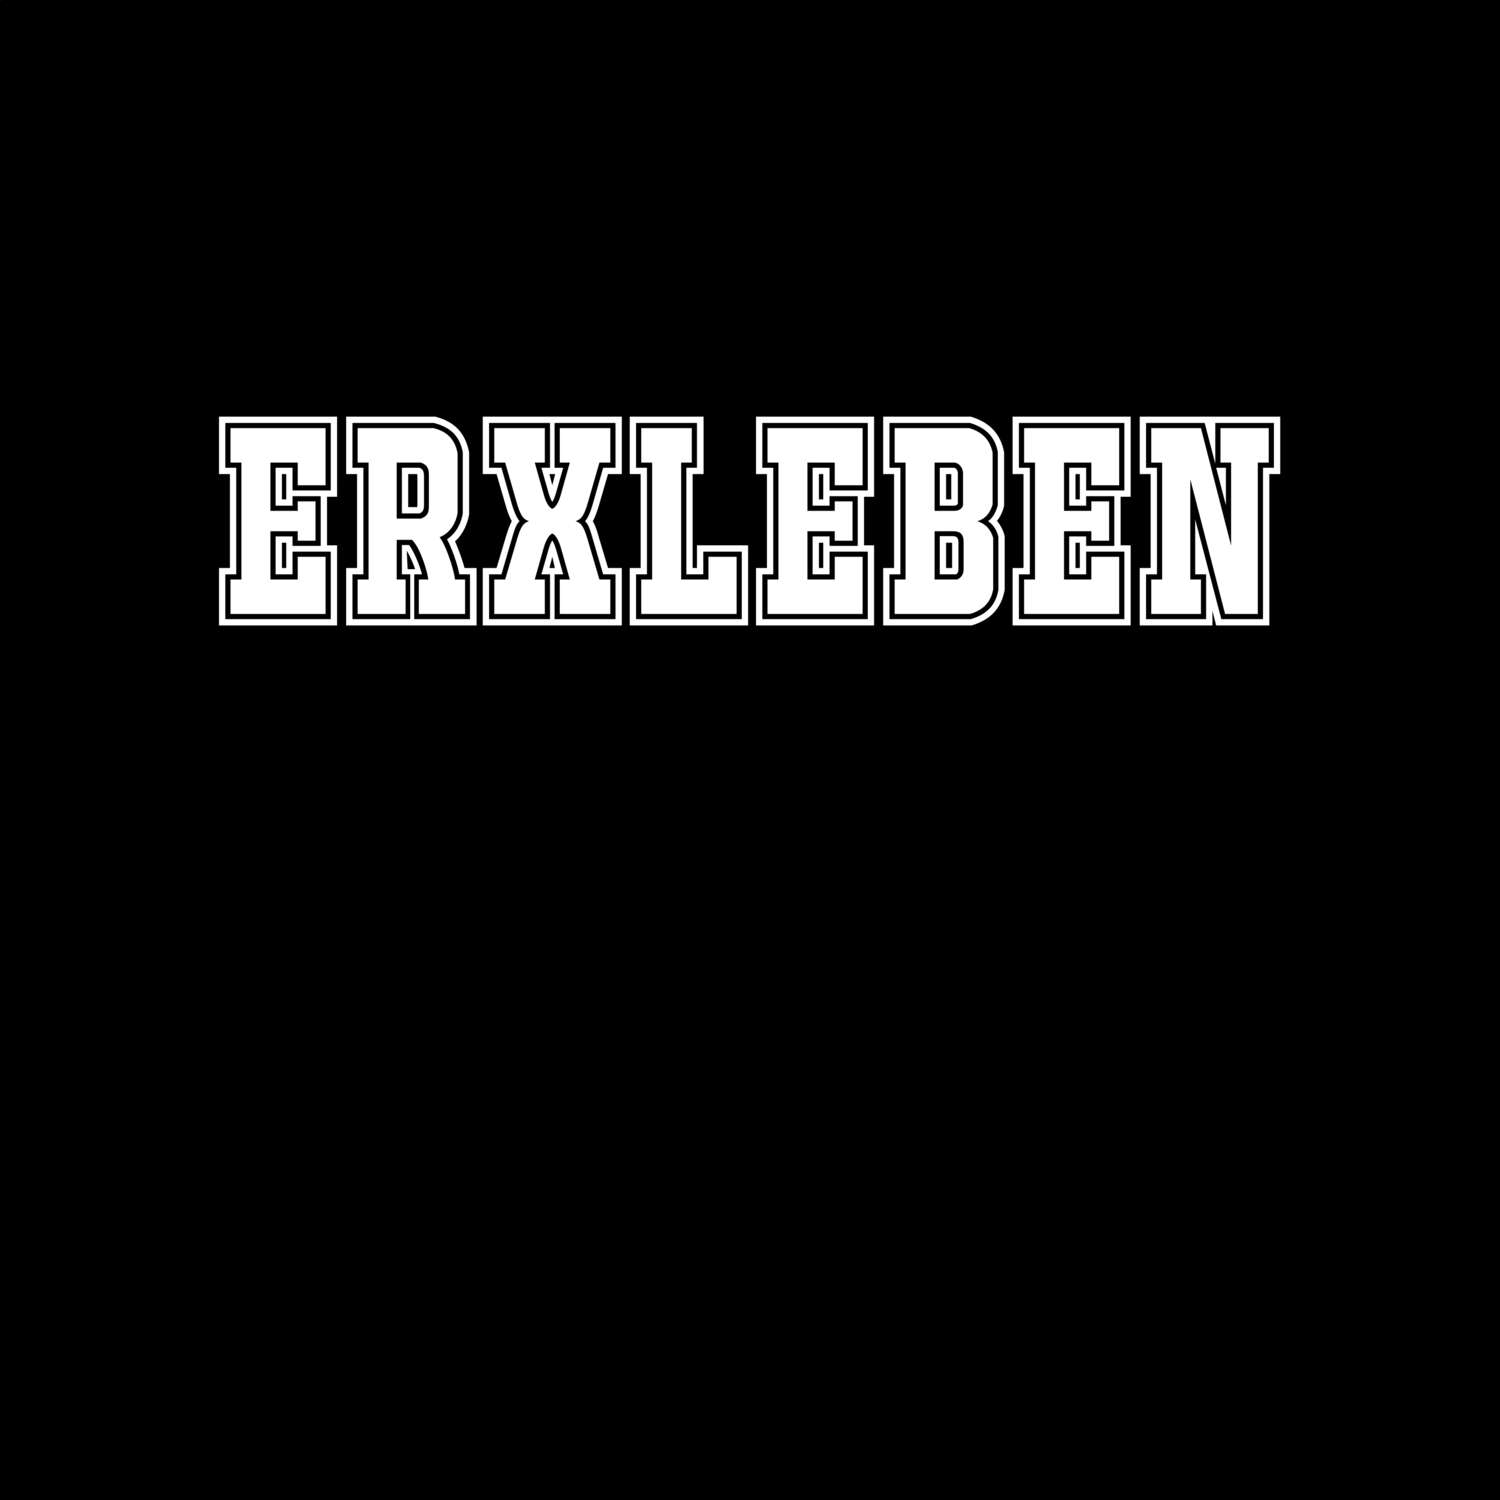 Erxleben T-Shirt »Classic«